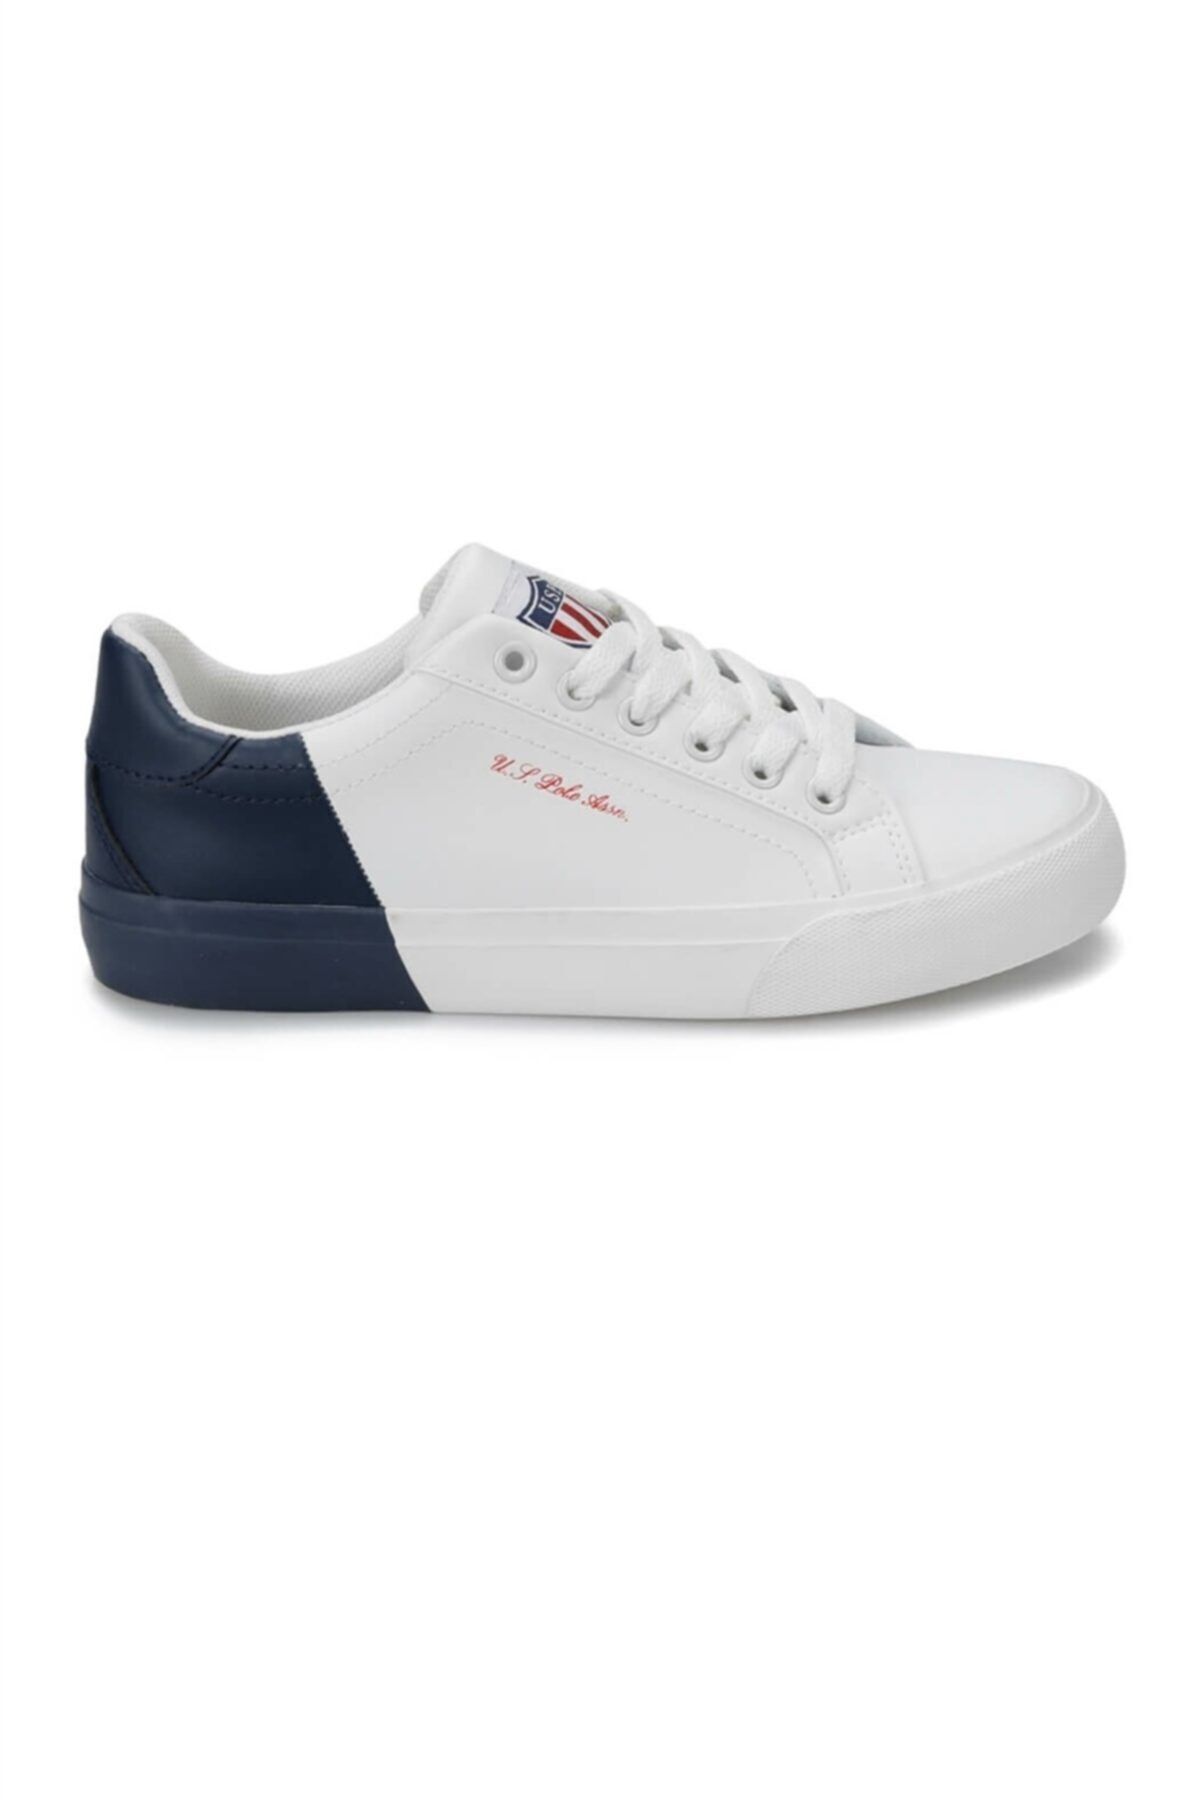 U.S. Polo Assn. Lexi Beyaz Lacivert Kadın Sneaker Ayakkabı 100357630